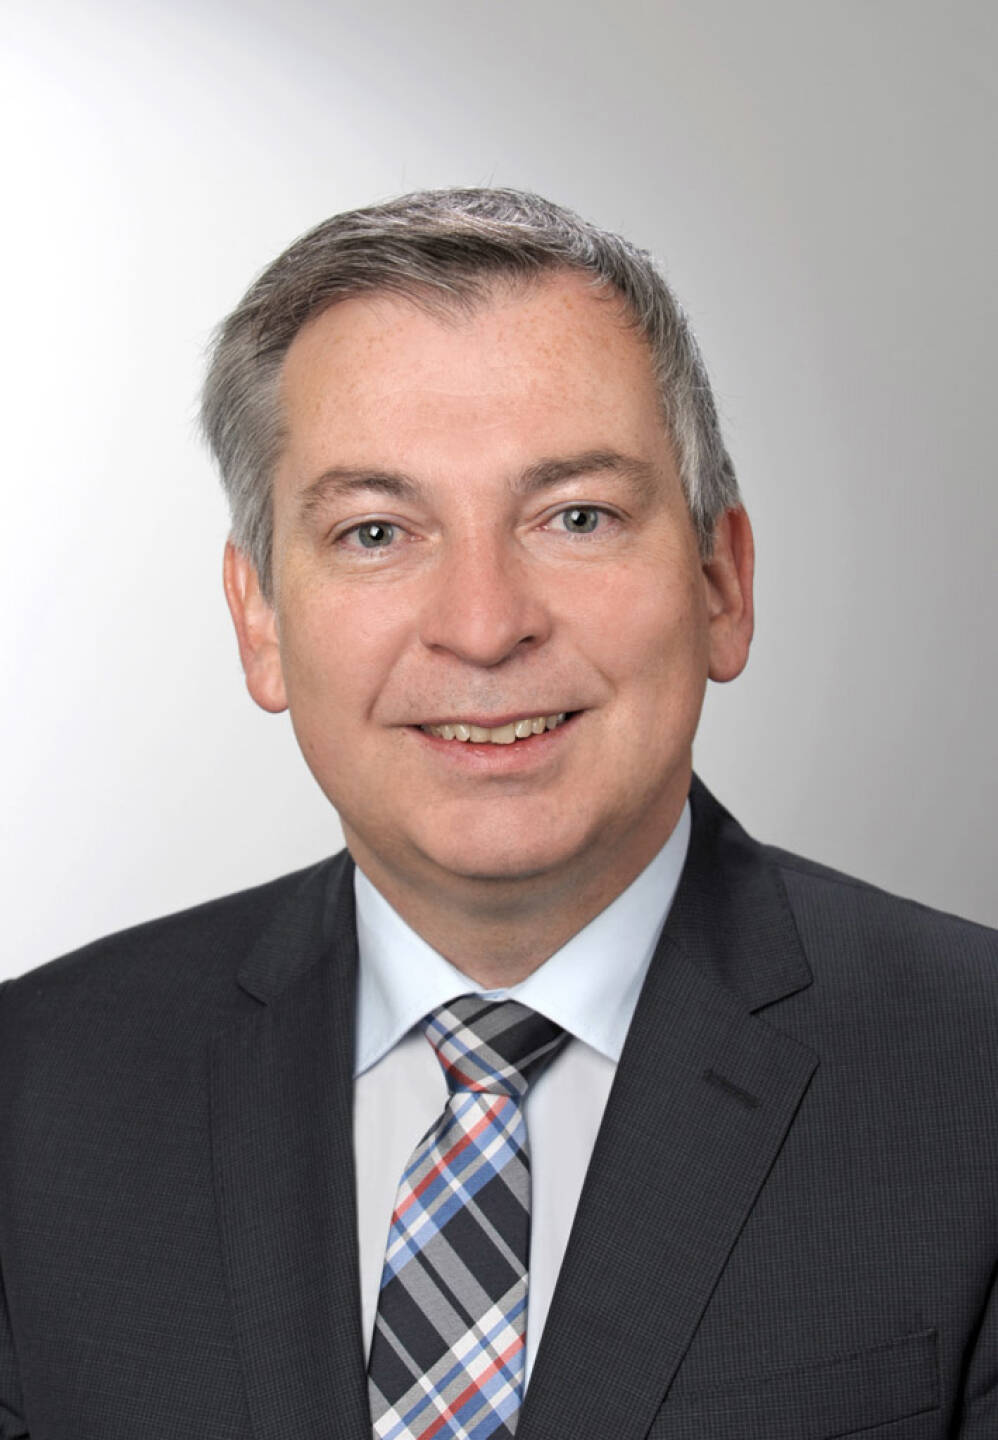 Erwin Haselberger hat die Position als Direktor für Vertrieb & Marketing der ifa AG übernommen. Zuletzt war er als Landesdirektor für Oberösterreich in der Wüstenrot Gruppe tätig, wo er unter anderem für den Auf- und Ausbau der Vertriebskanäle im Stamm-, Makler- und Partnervertrieb zuständig war. Die ifa AG ist der Spezialist für Immobilieninvestitionen für private und institutionelle Anleger. Credit: ifa